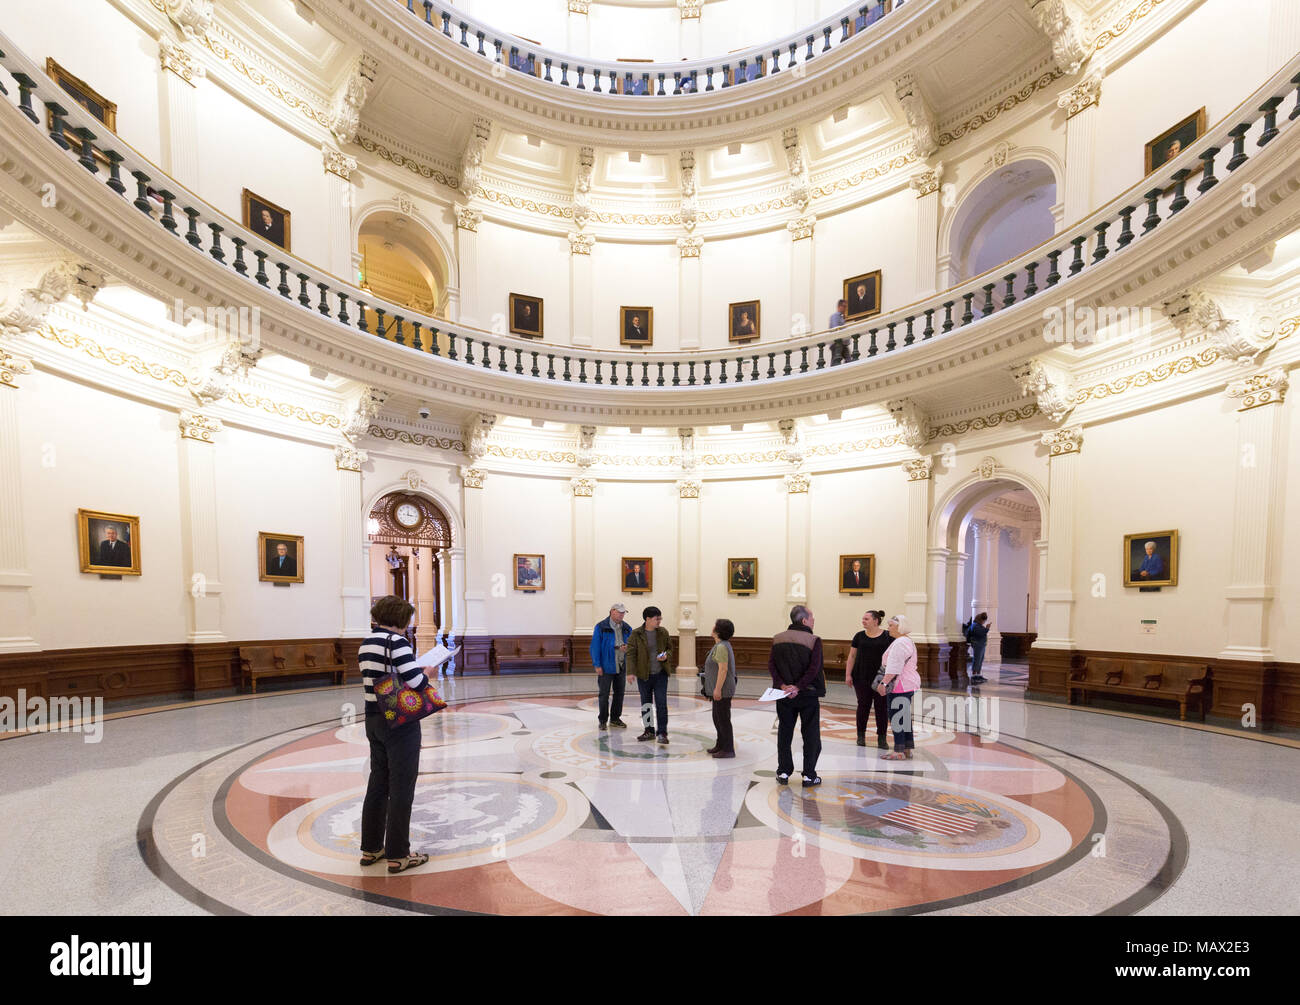 Les gens dans la rotonde, le Texas State Capitol building, Austin, Texas USA Banque D'Images